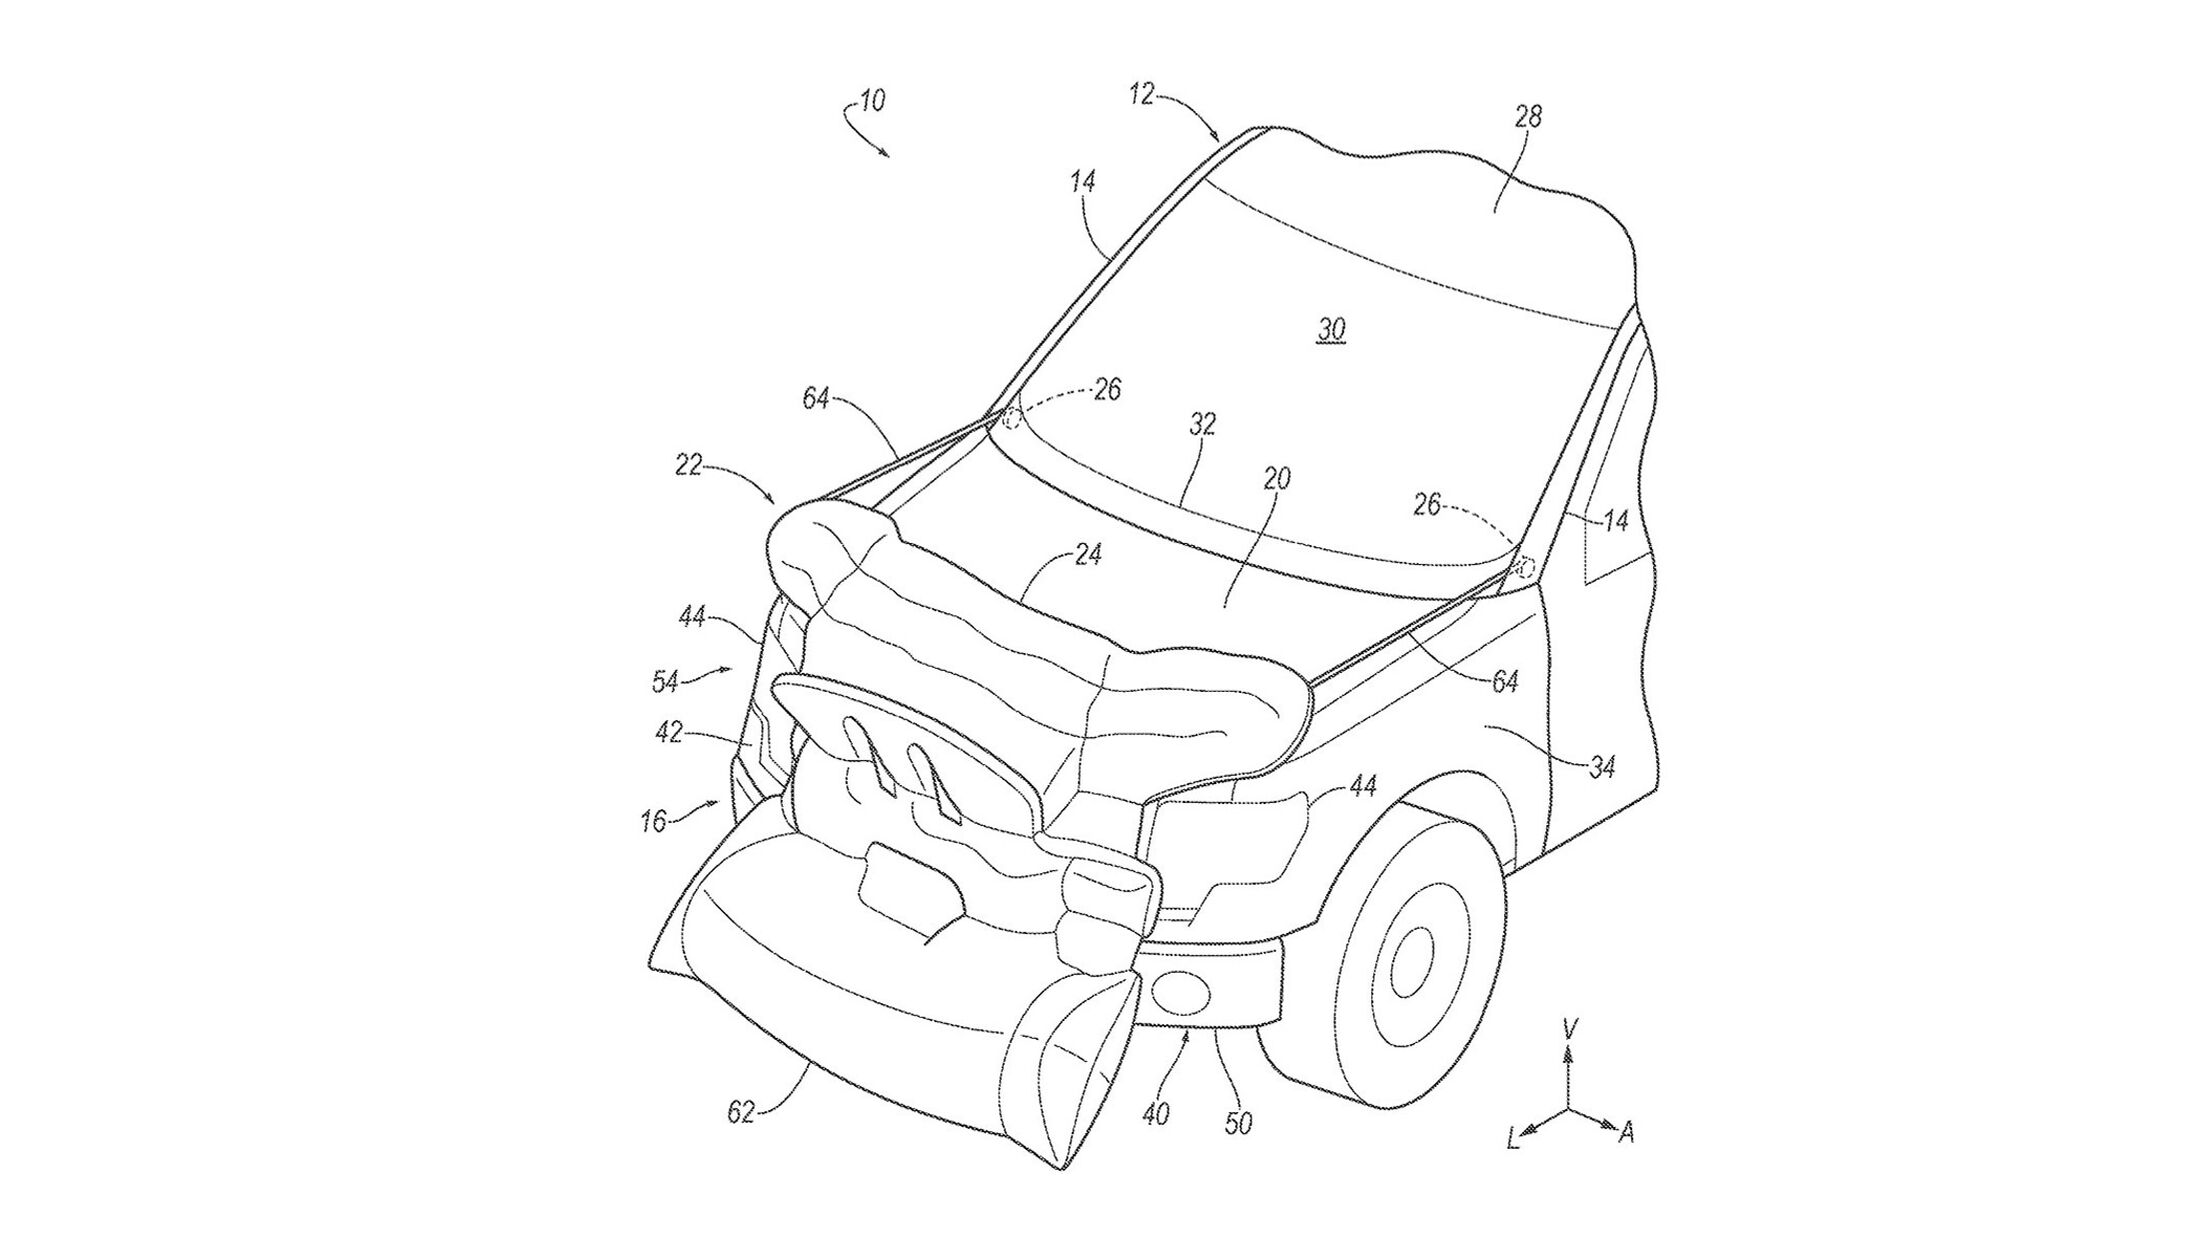 Ford-Airbag-Patent: Luftsack für die Fahrzeugfront